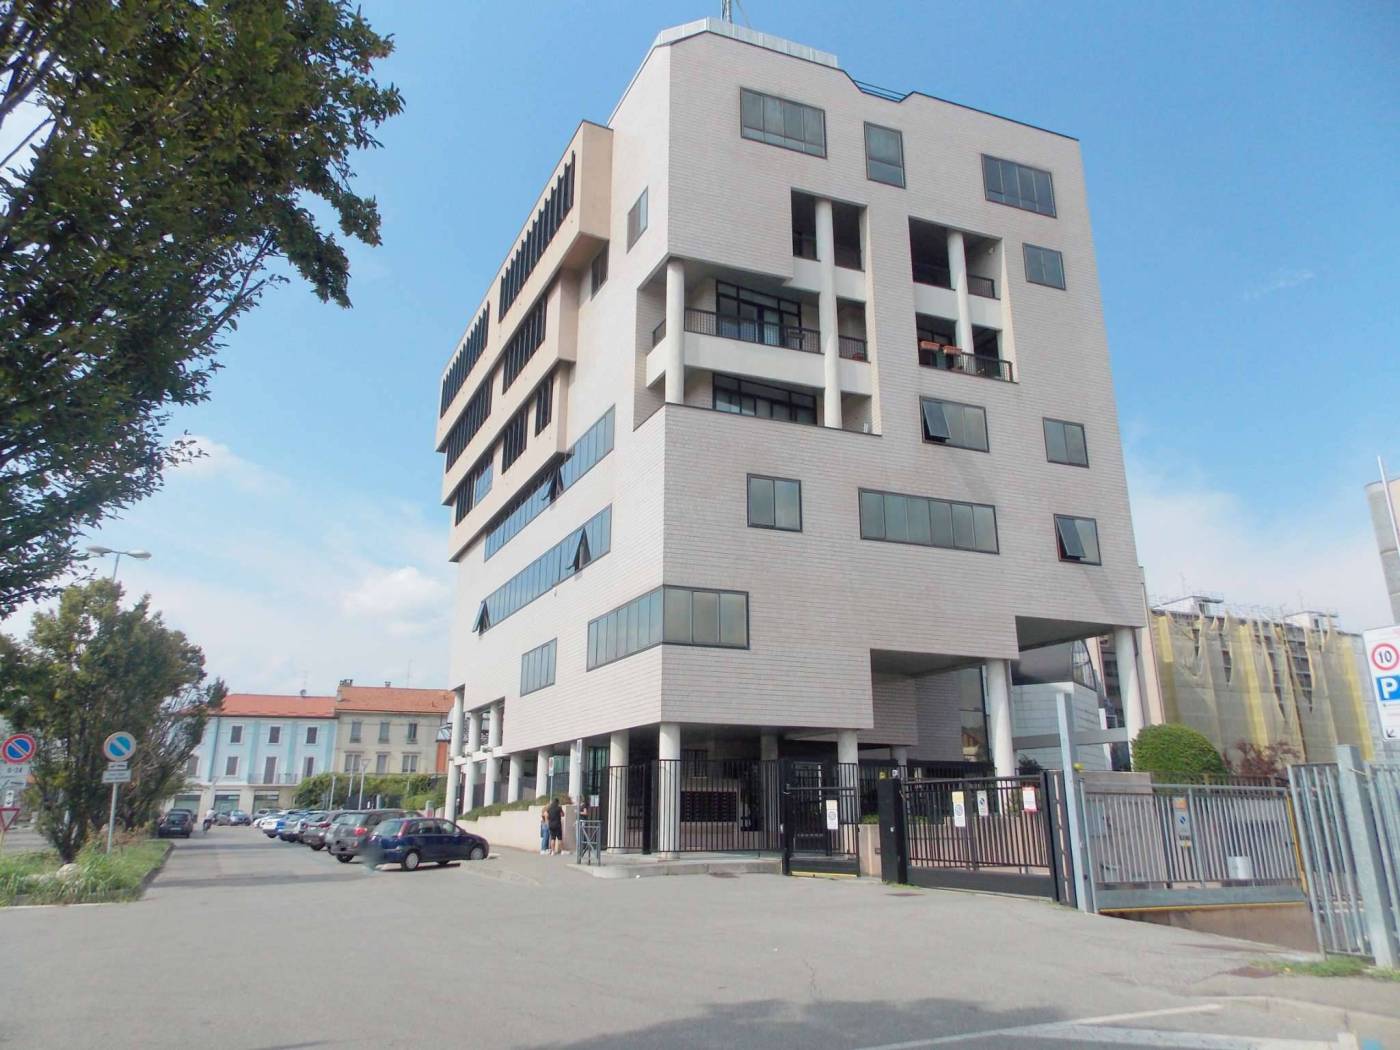 Rif: 700 - Monza in zona San Biagio proponiamo ufficio all'interno di contesto signorile con portineria. L'immobile posto al piano seminterrato con 